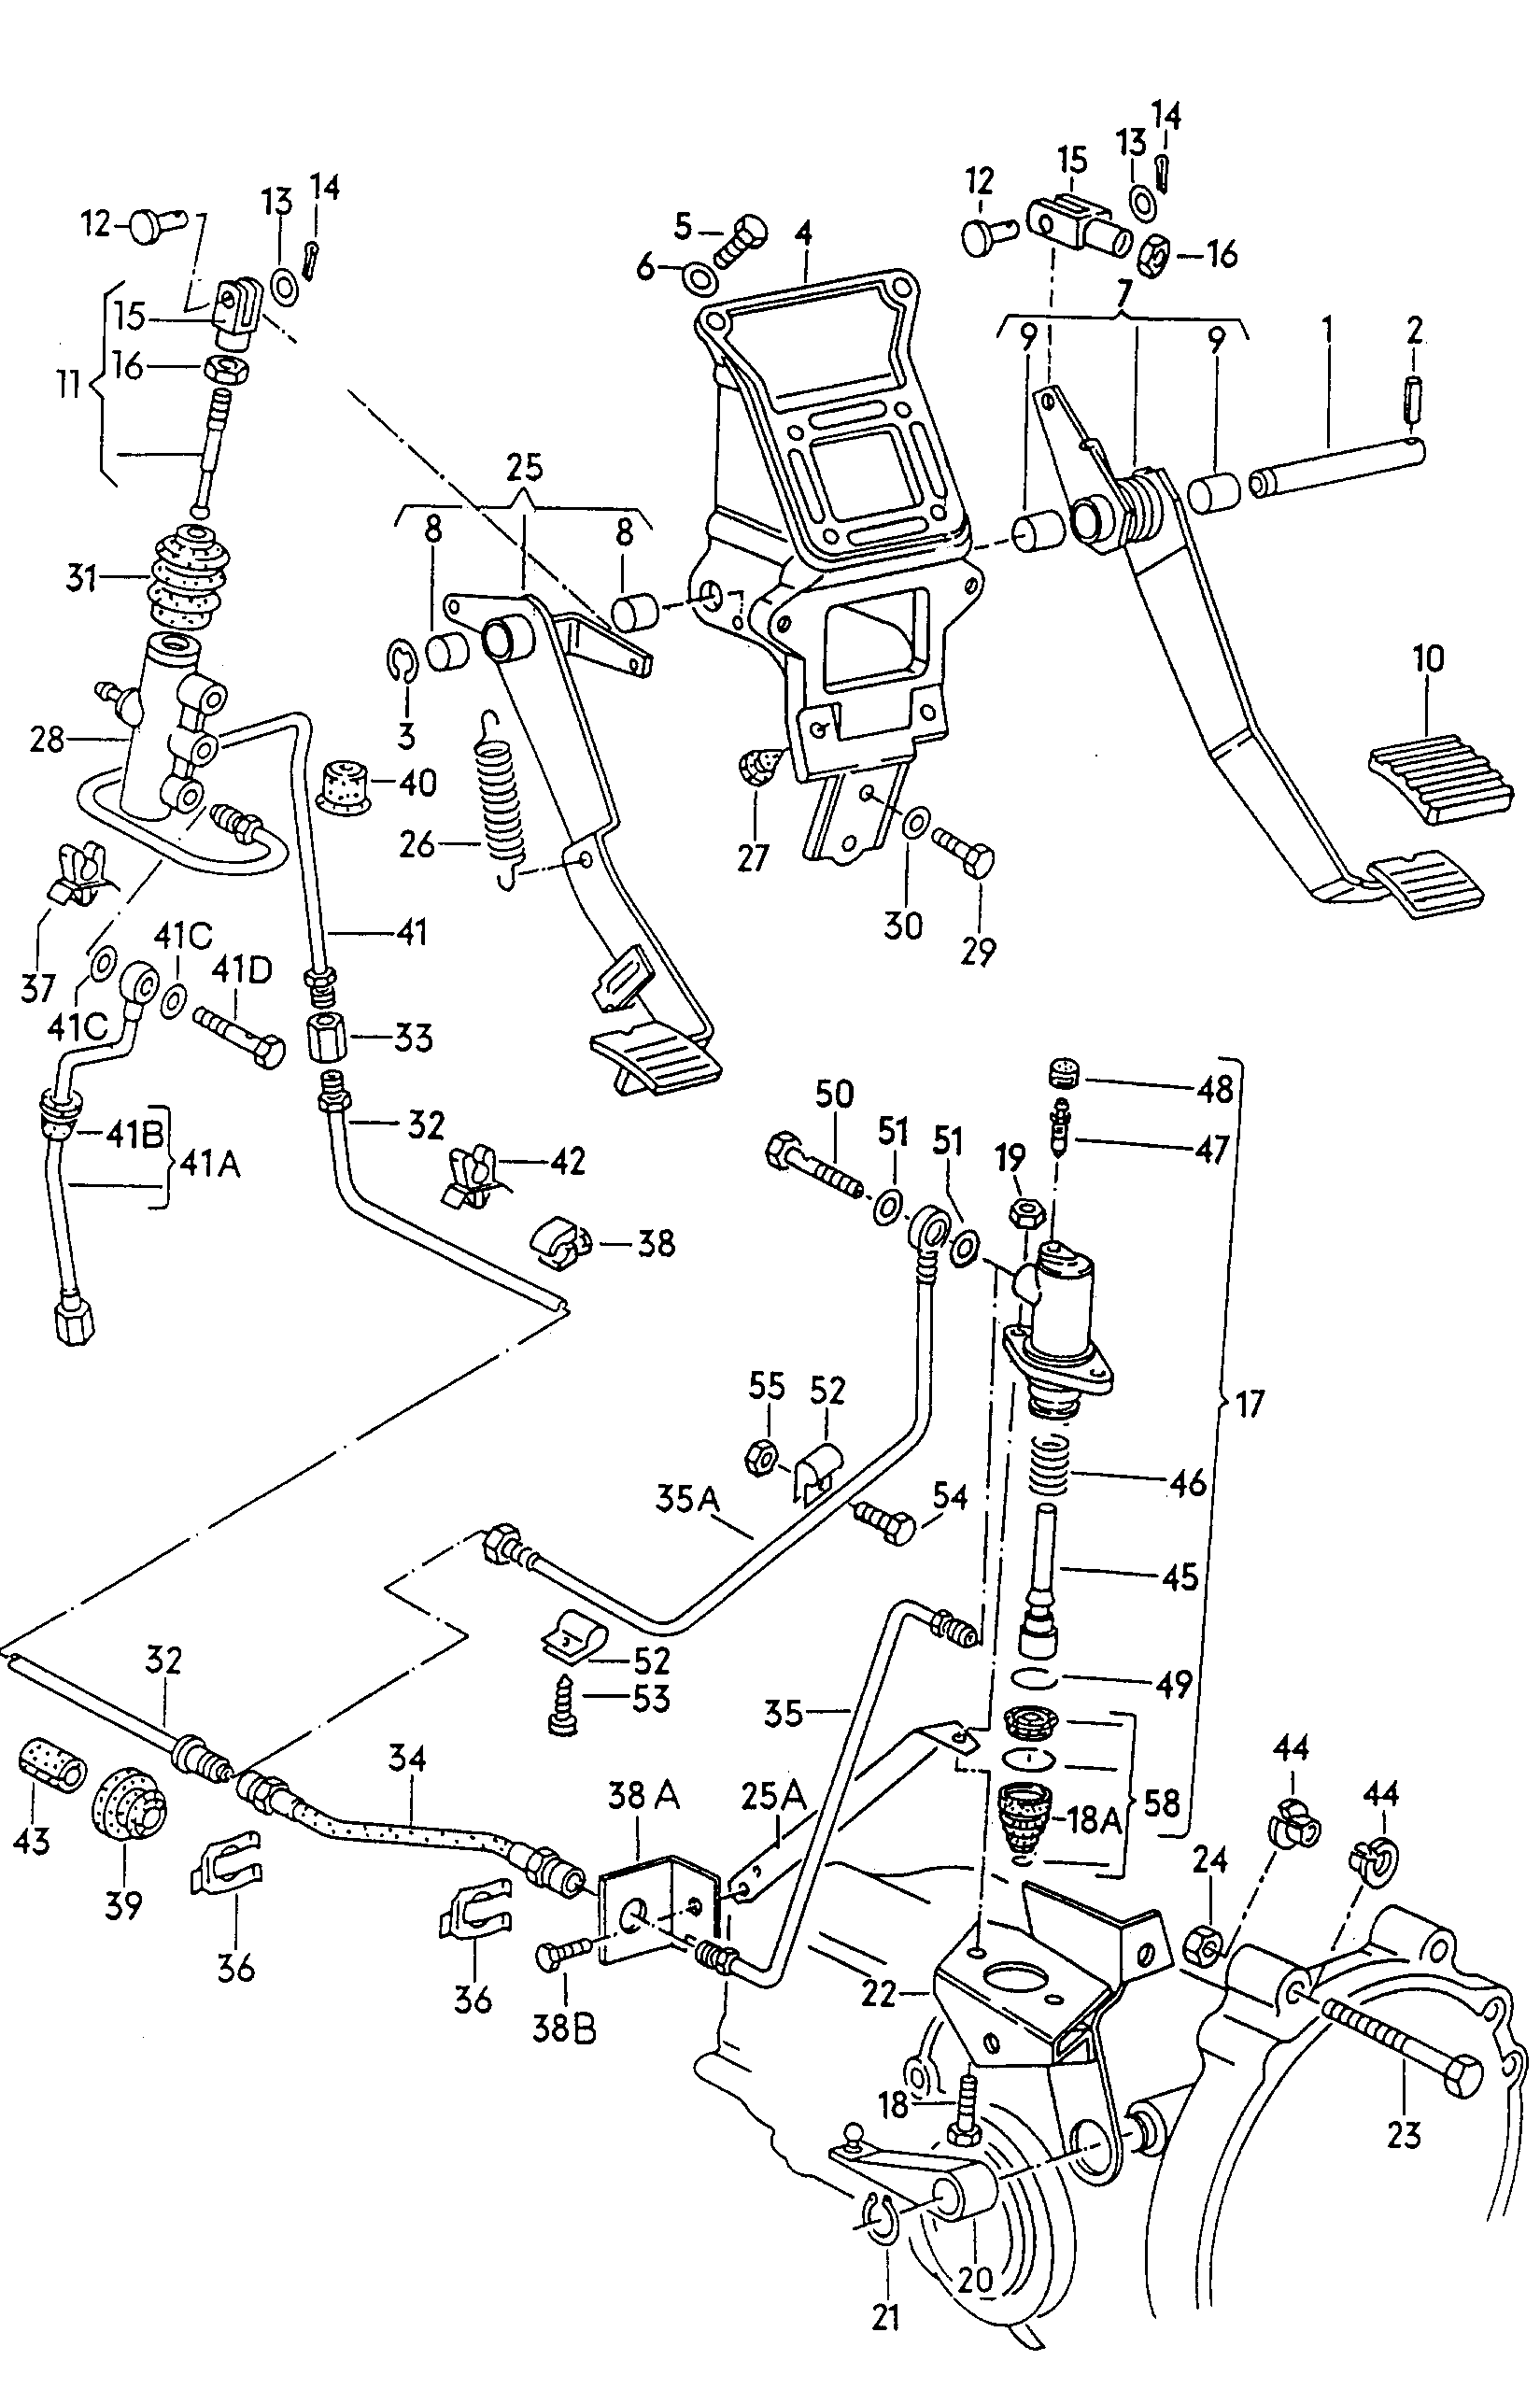 制动和离合器
踏板机构; 用于离合器液压
操纵装置 - Typ 2/syncro(T2)  